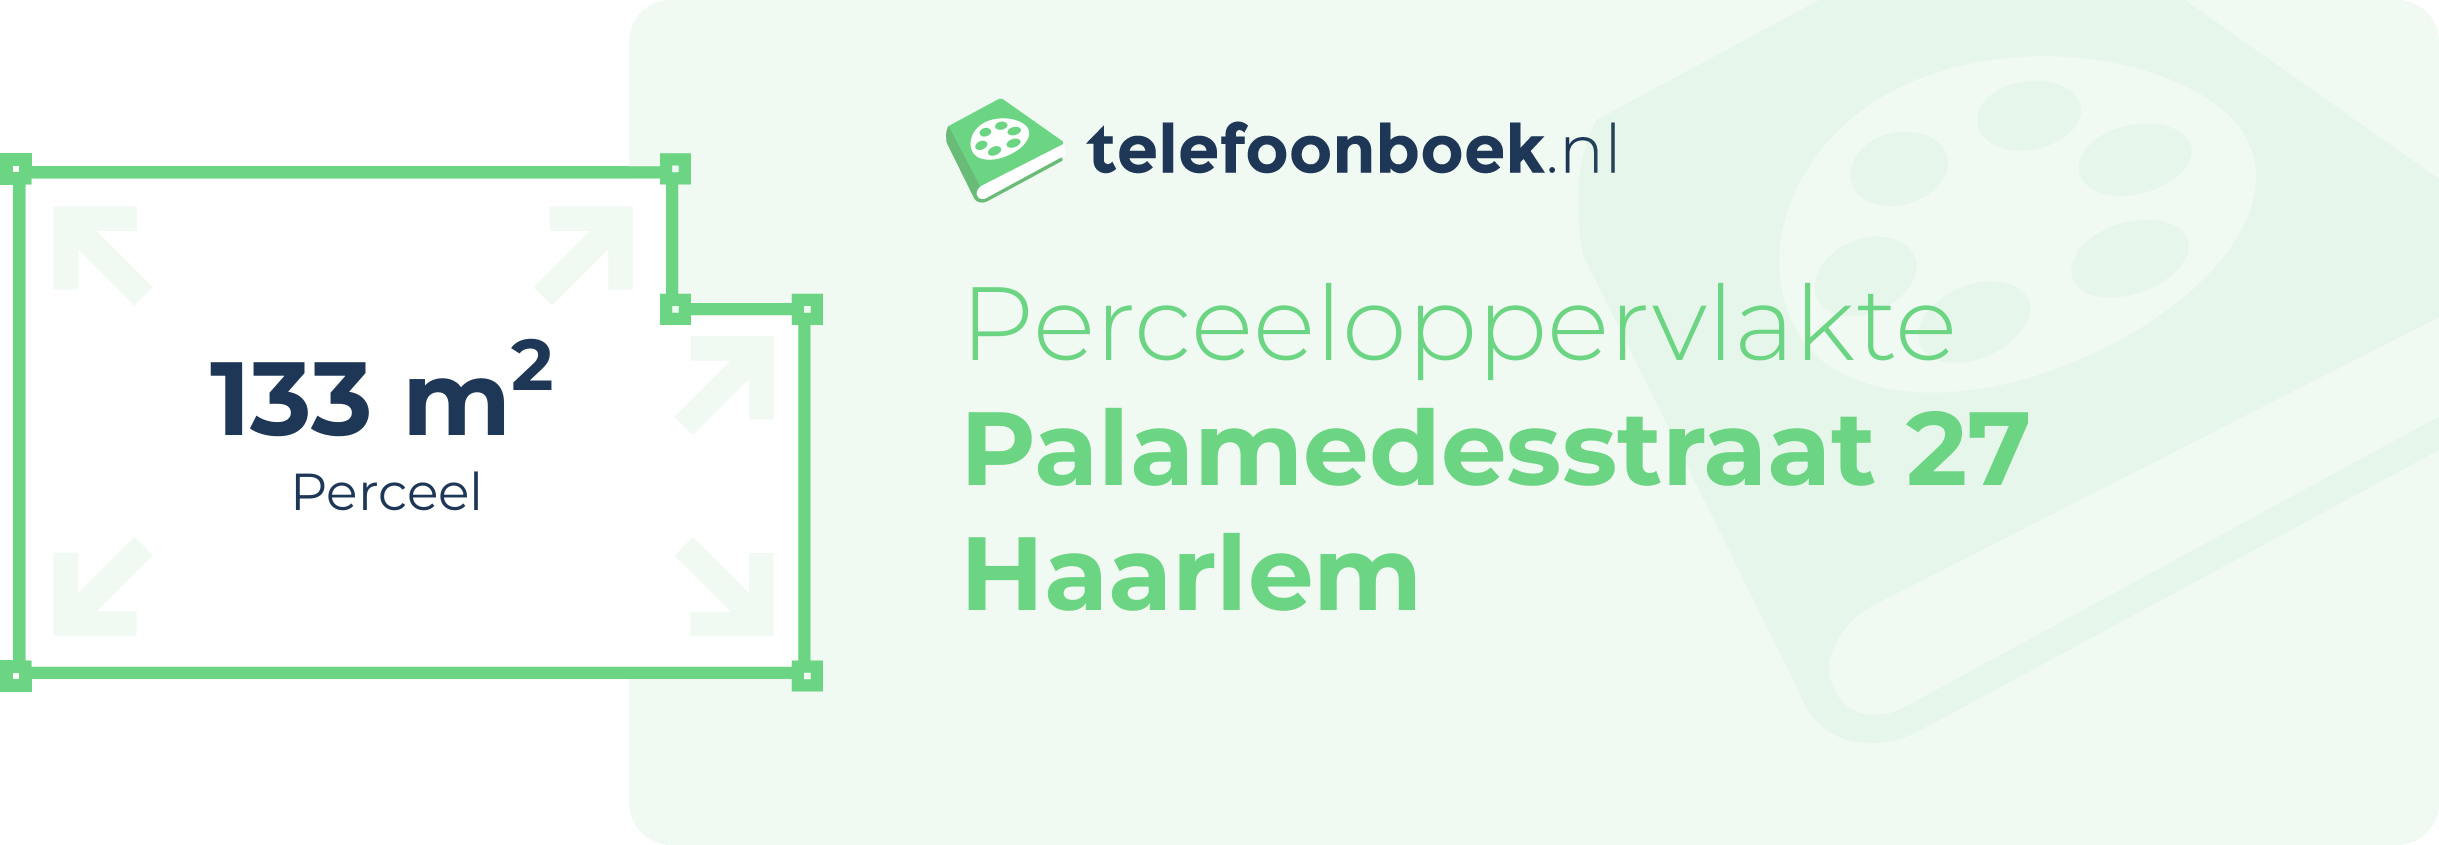 Perceeloppervlakte Palamedesstraat 27 Haarlem